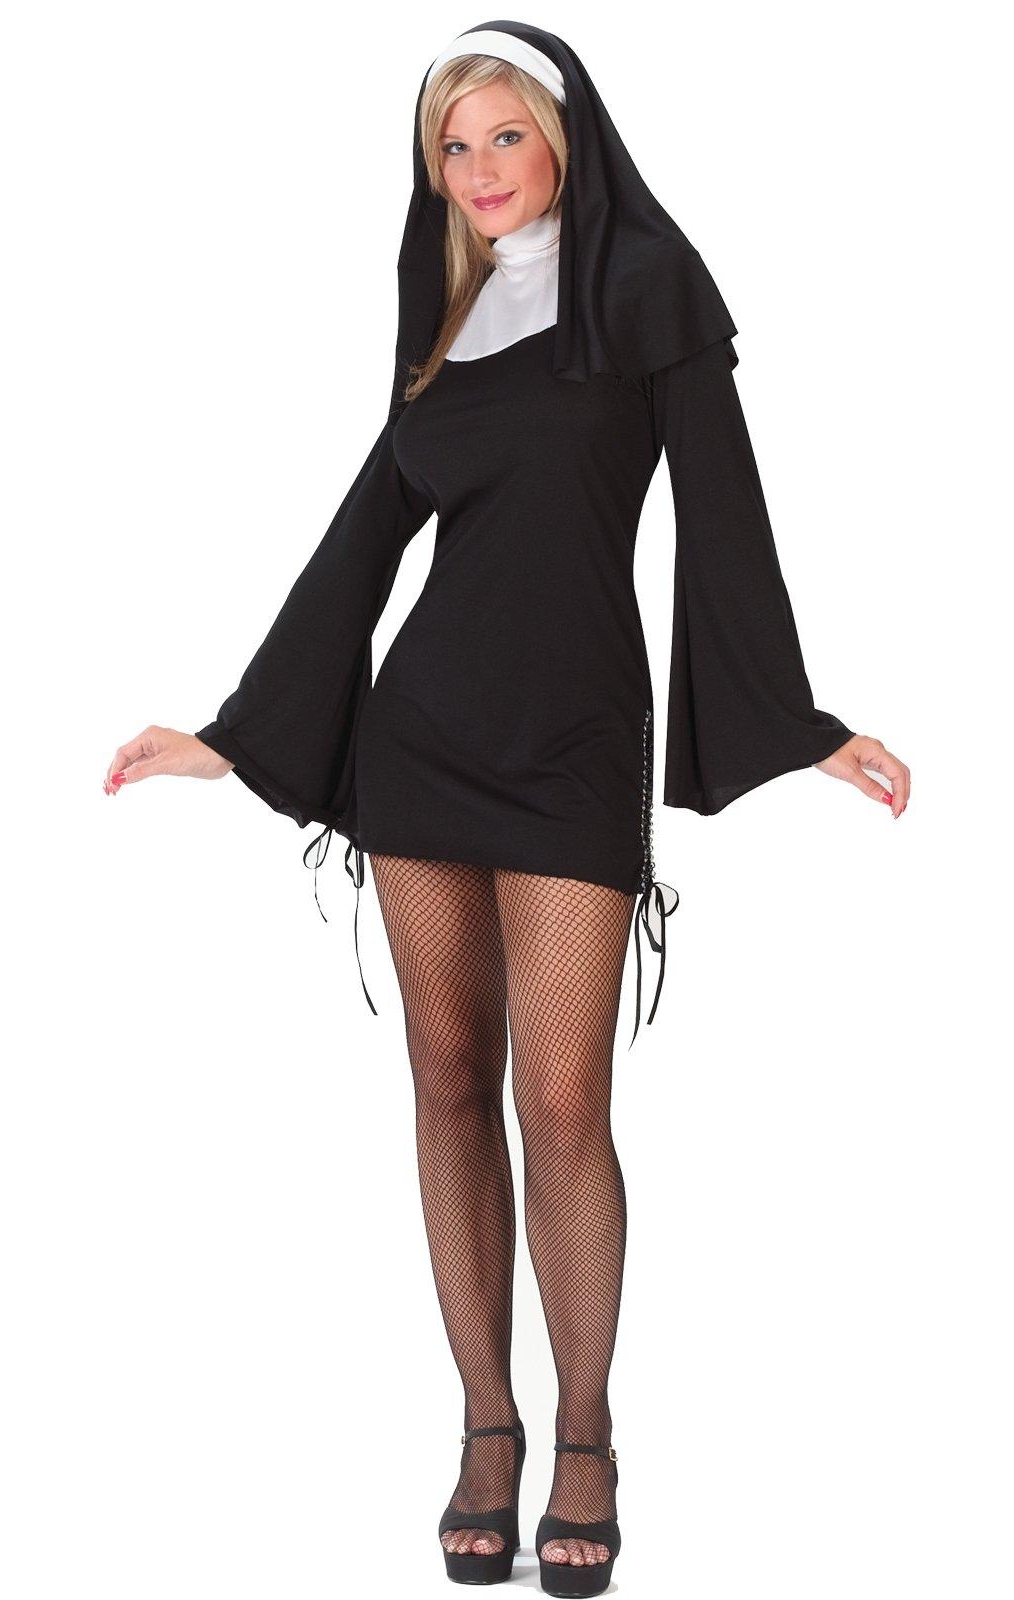 Blonde Nun wearing Black Fishnet Pantyhose and Black Short Dress